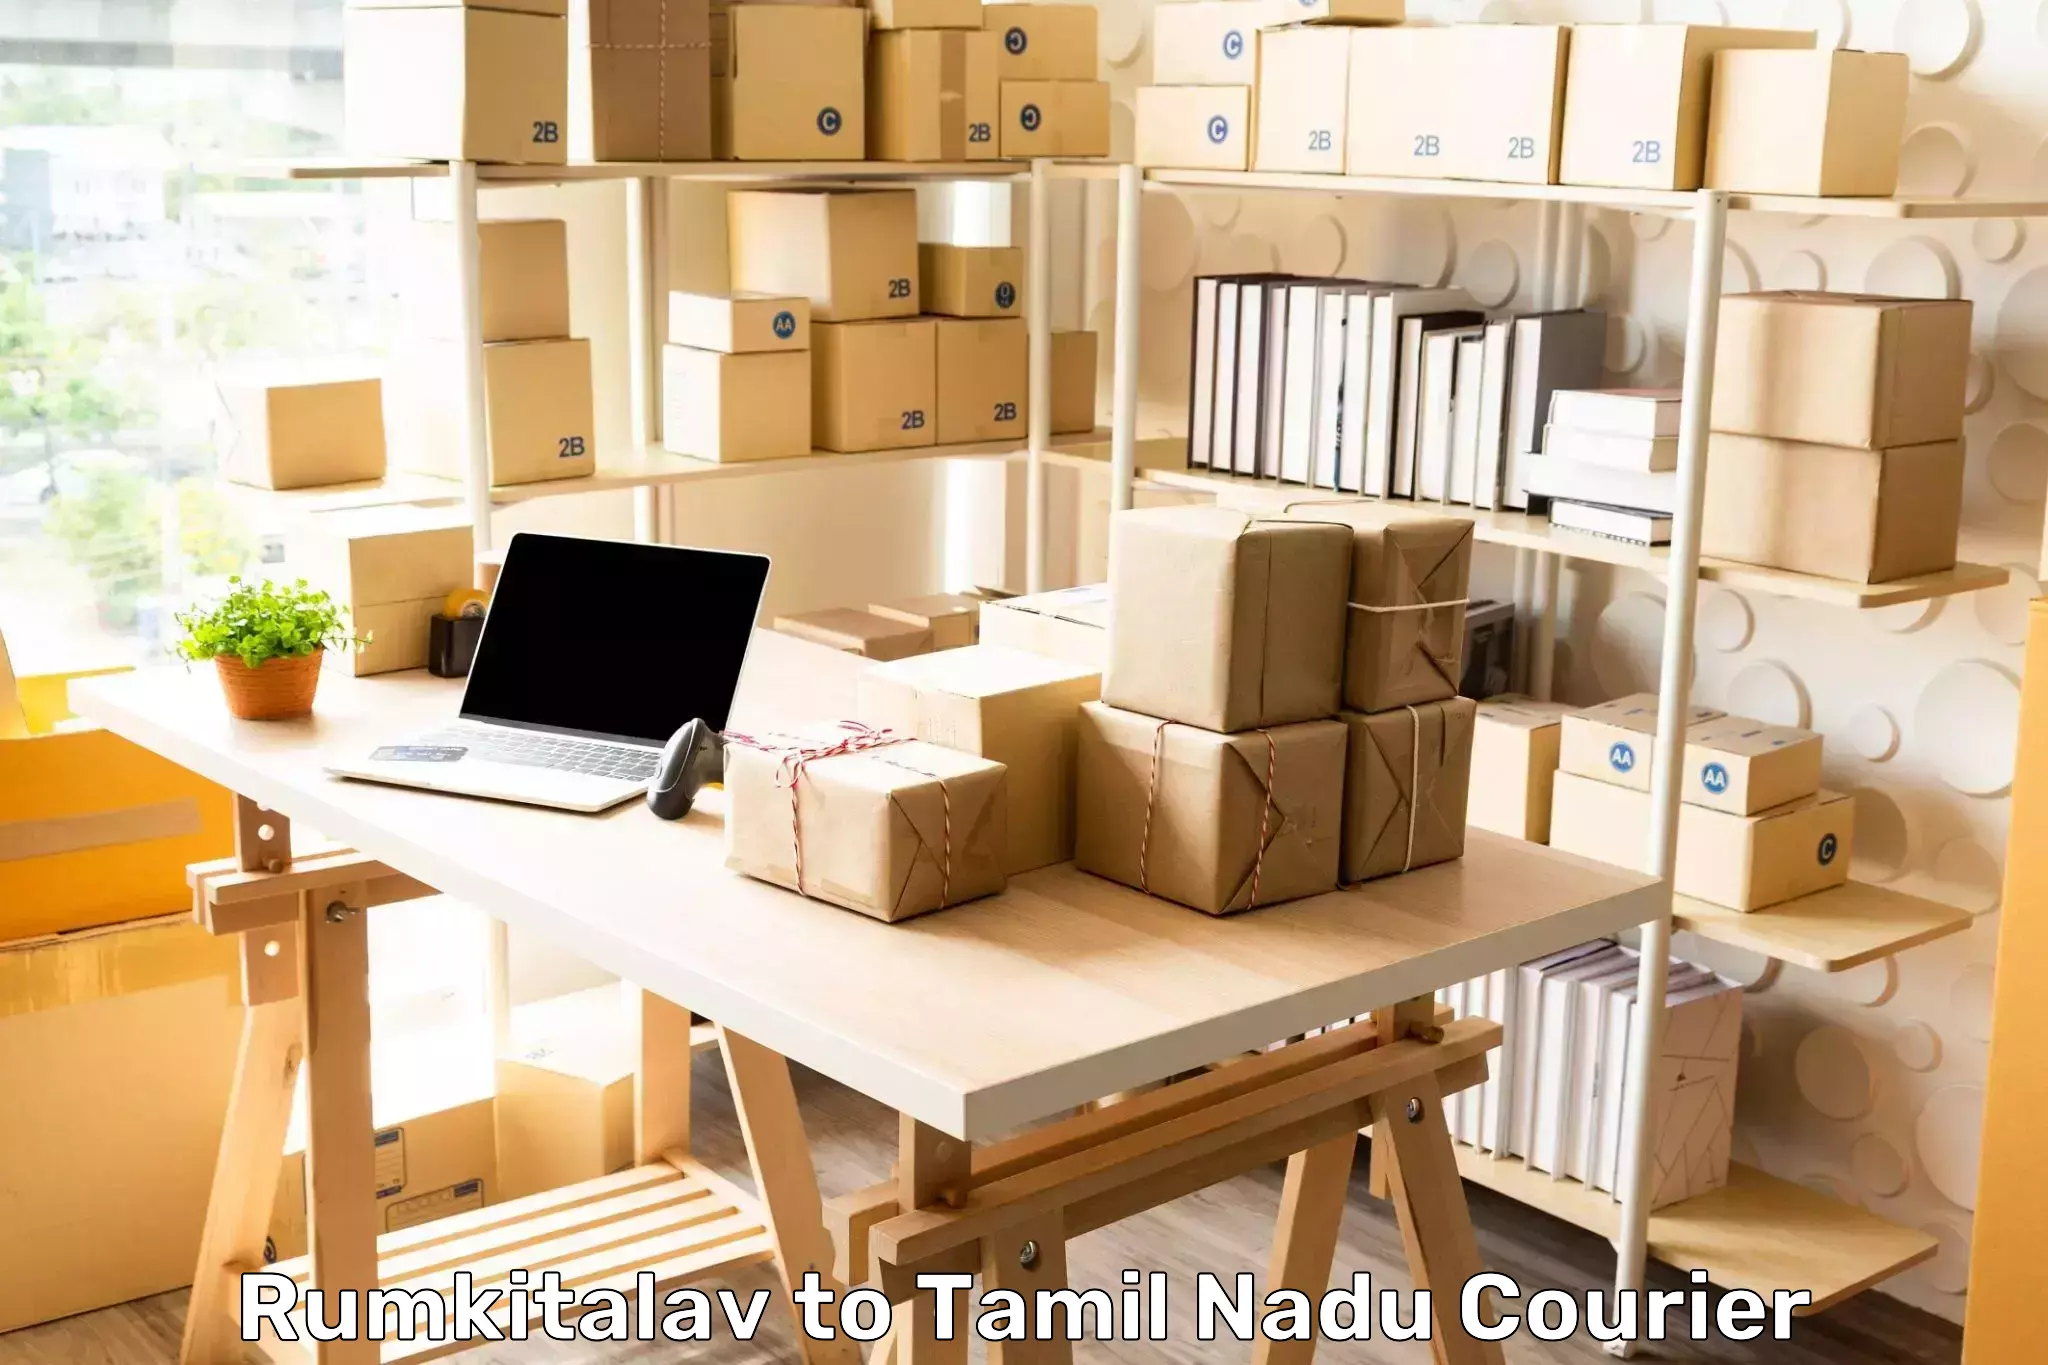 Express package handling in Rumkitalav to Tamil Nadu